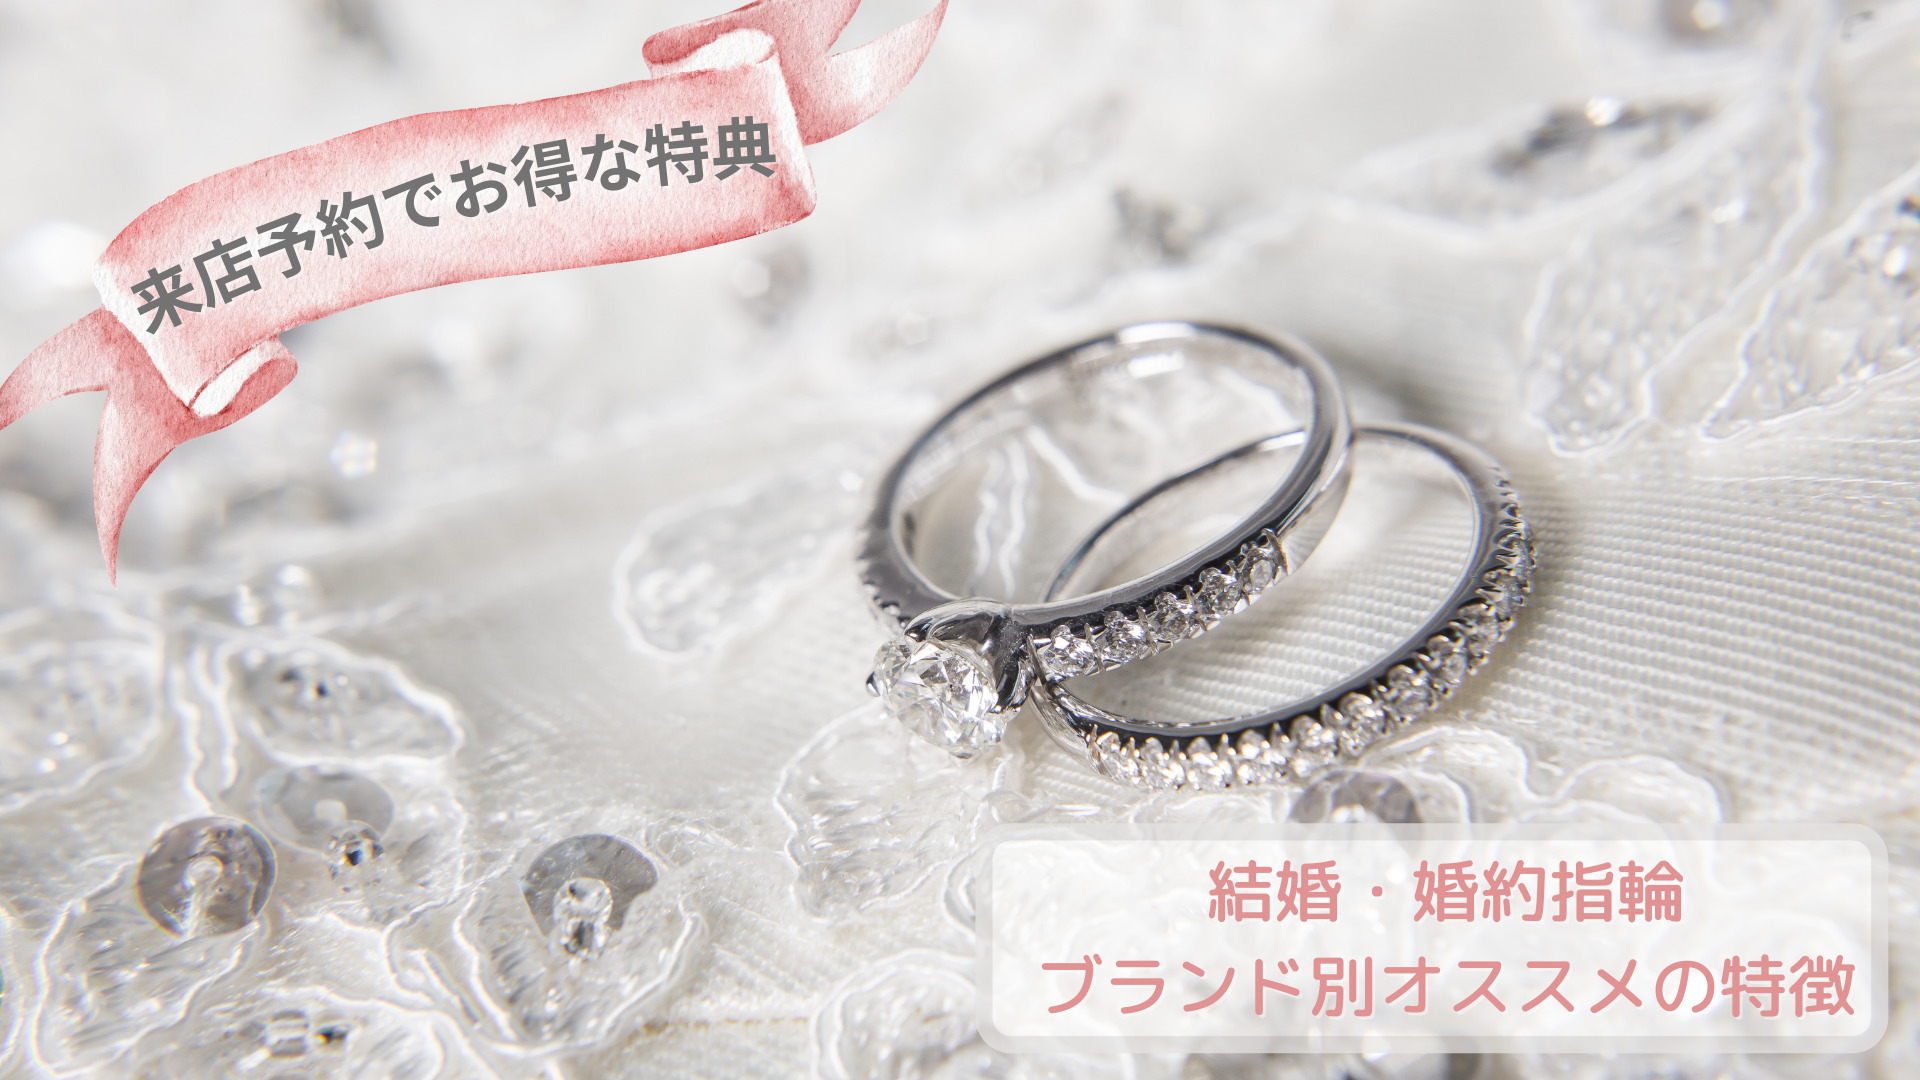 【来店予約でお得な特典】結婚・婚約指輪ブランド別オススメの特徴